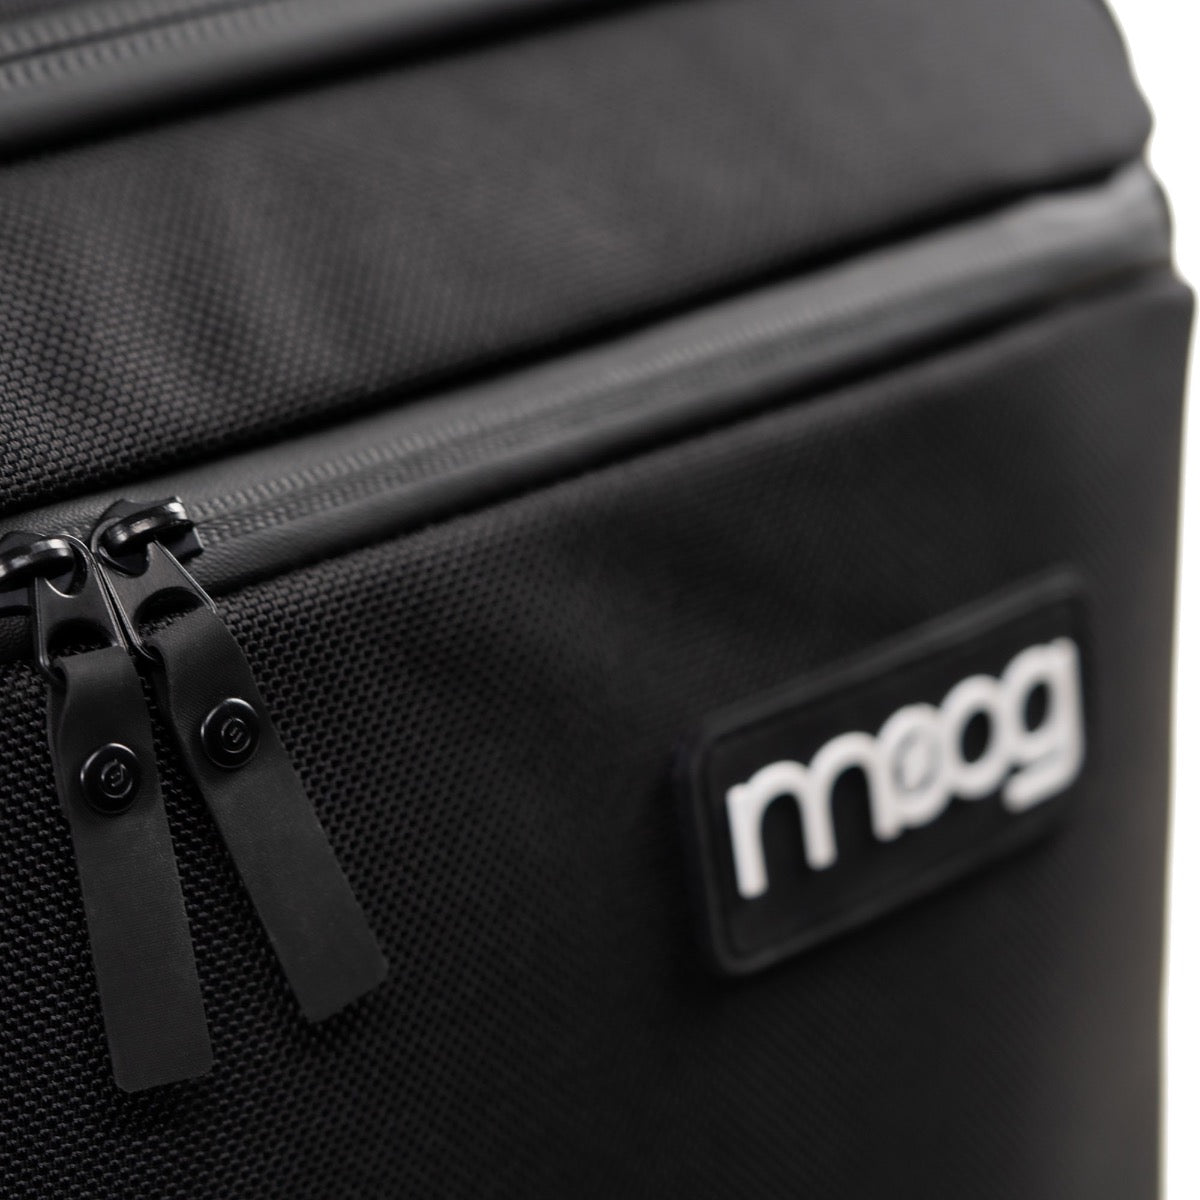 Detail image of Moog Grandmother SR Case showing zipper construction and Moog logo badge